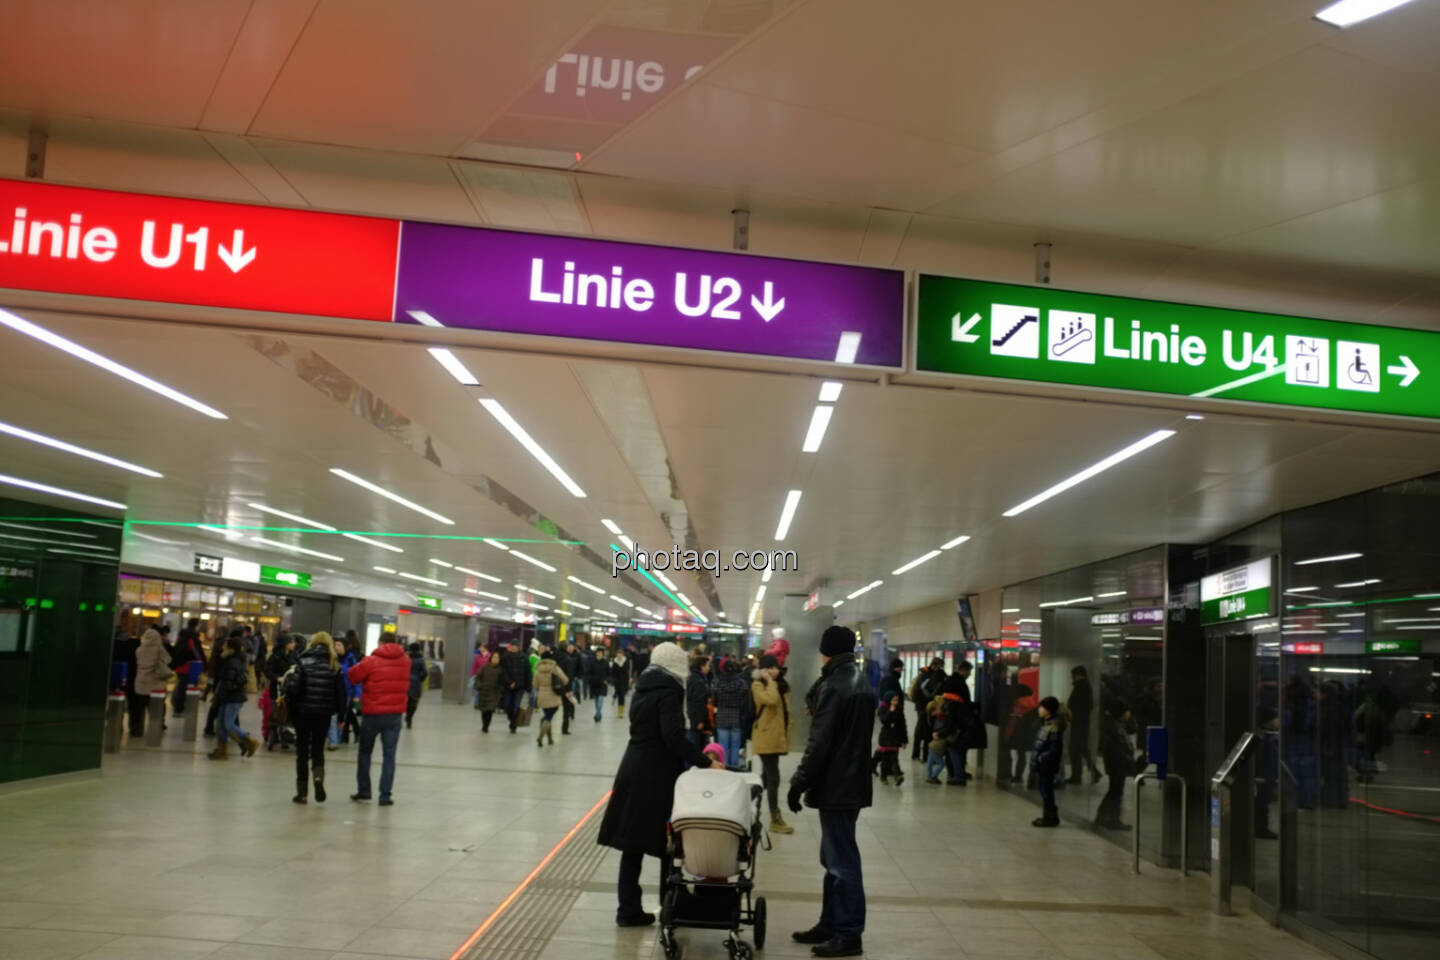 U-Bahn, U1, U2, U4